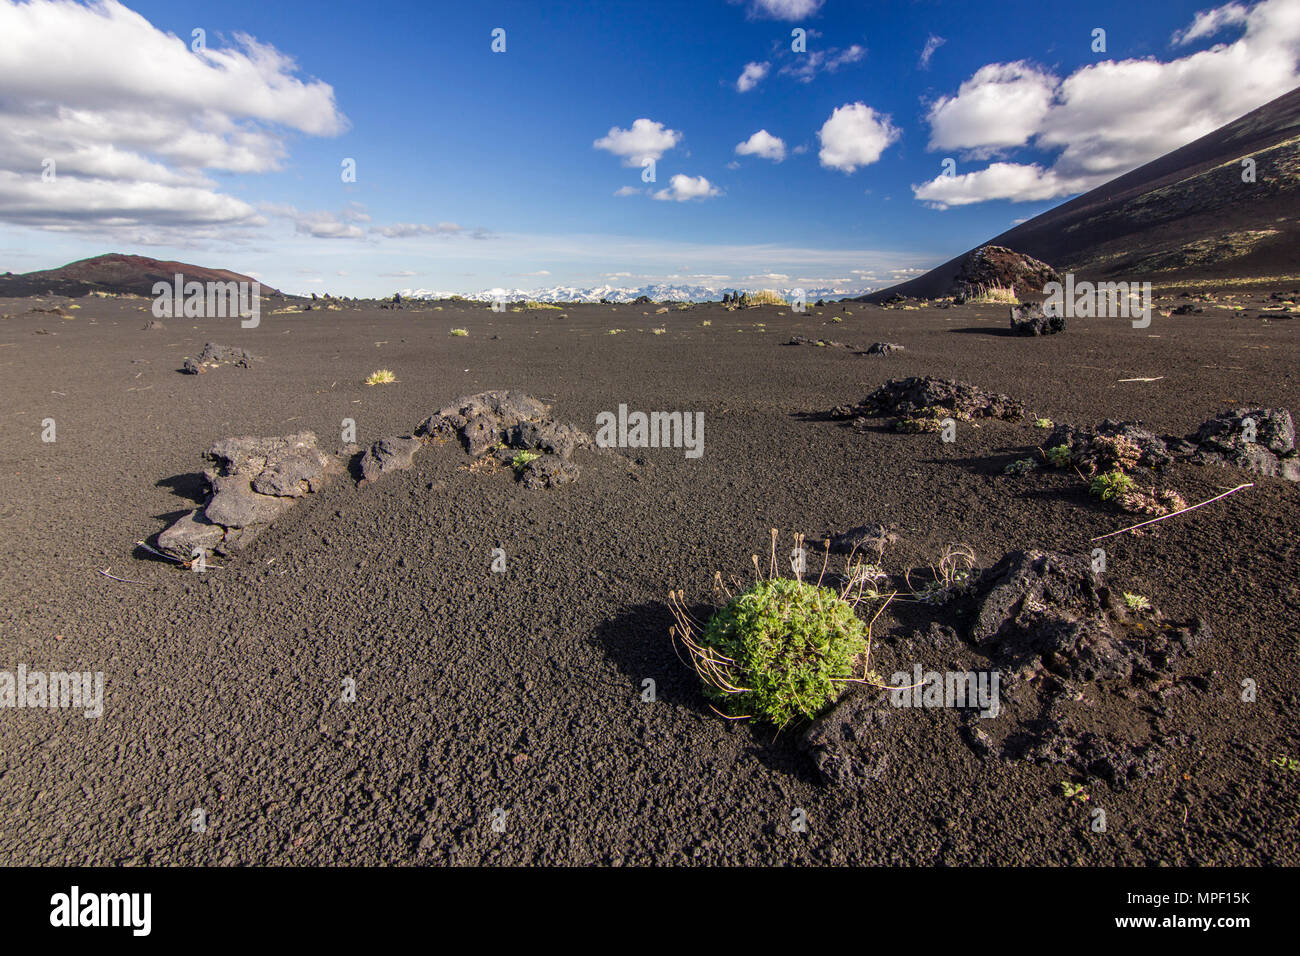 Feld mit schwarzem Sand vulkanischen Ursprungs mit wenig Vegetation Stockfoto